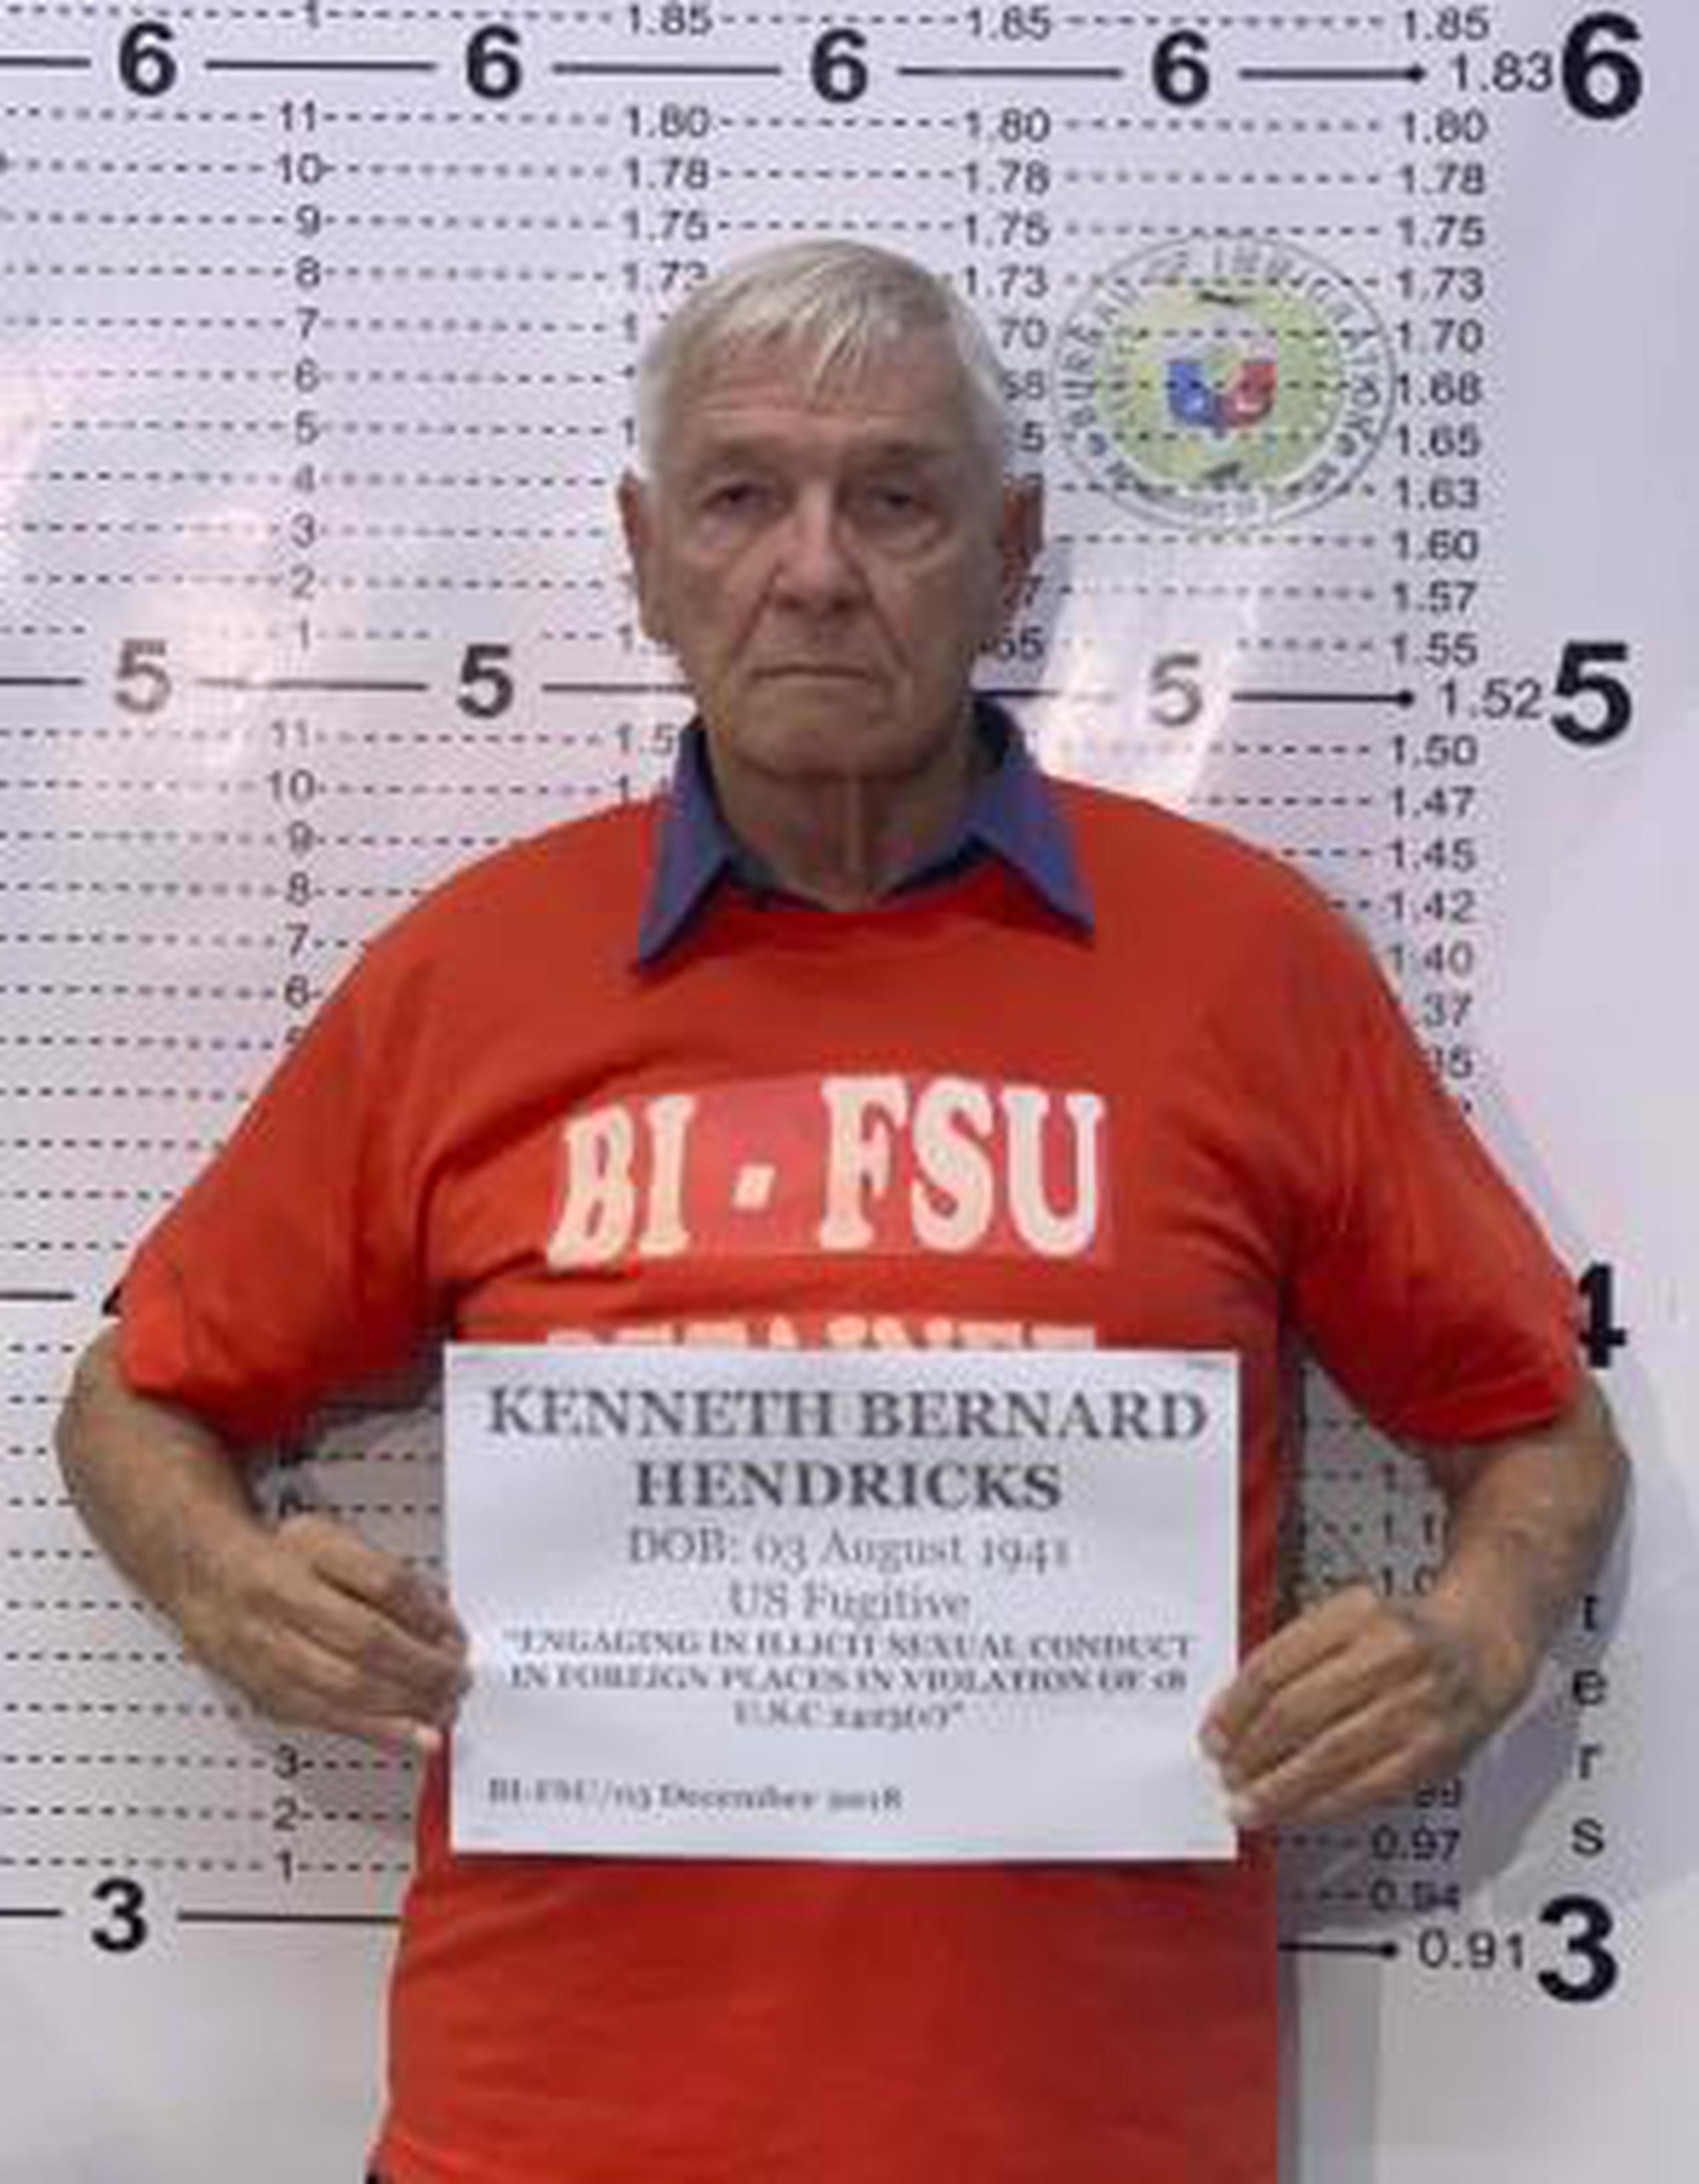 Kenneth Bernard Hendricks fue acusado en Ohio por conducta sexual ilícita en Filipinas. (Bureau of Immigration PIO vía AP)